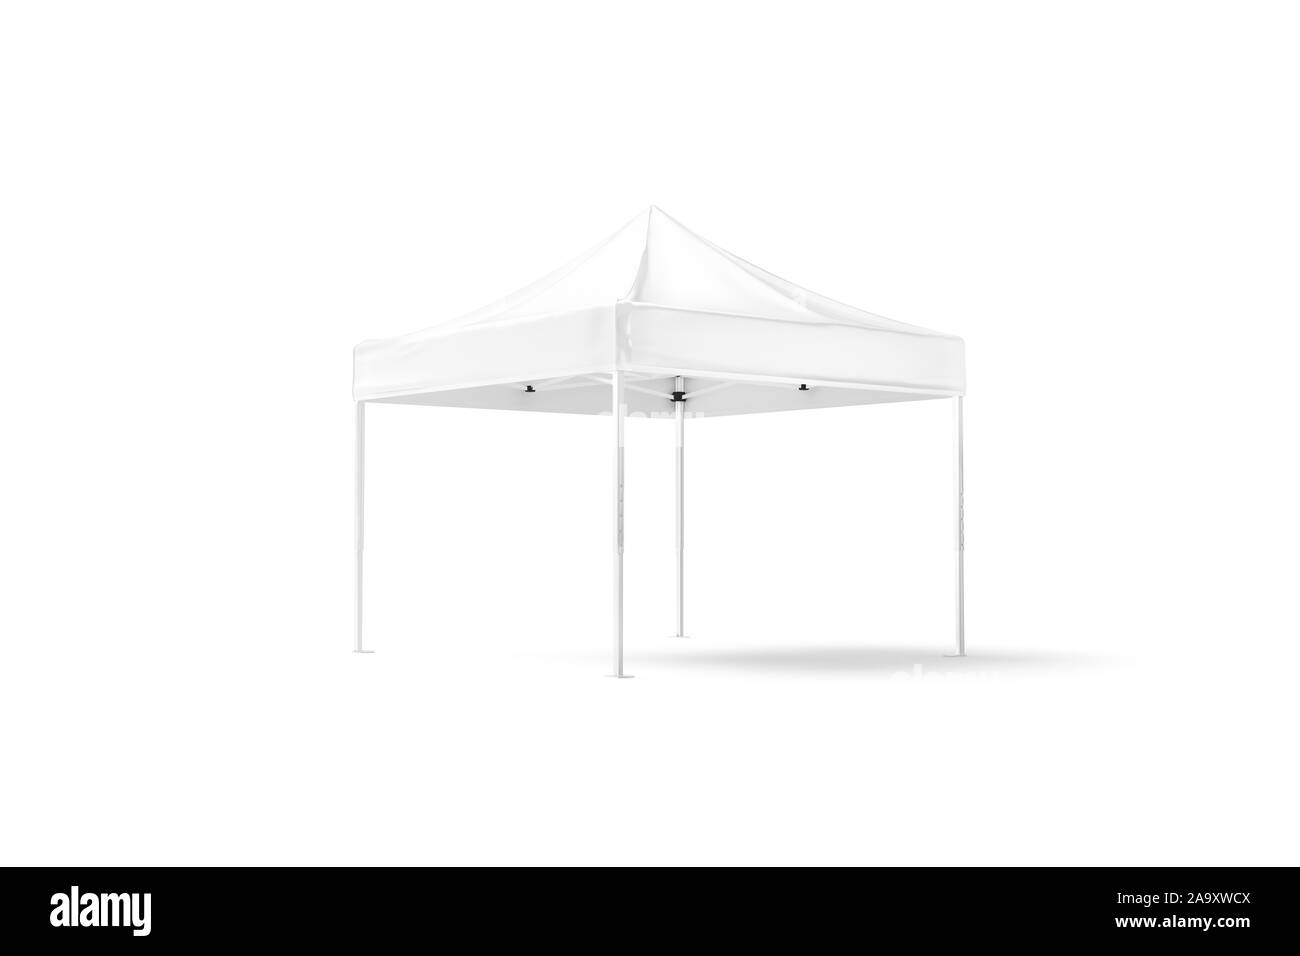 Maquette de tente à baldaquin blanc vierge avec vue à moitié retournée Banque D'Images